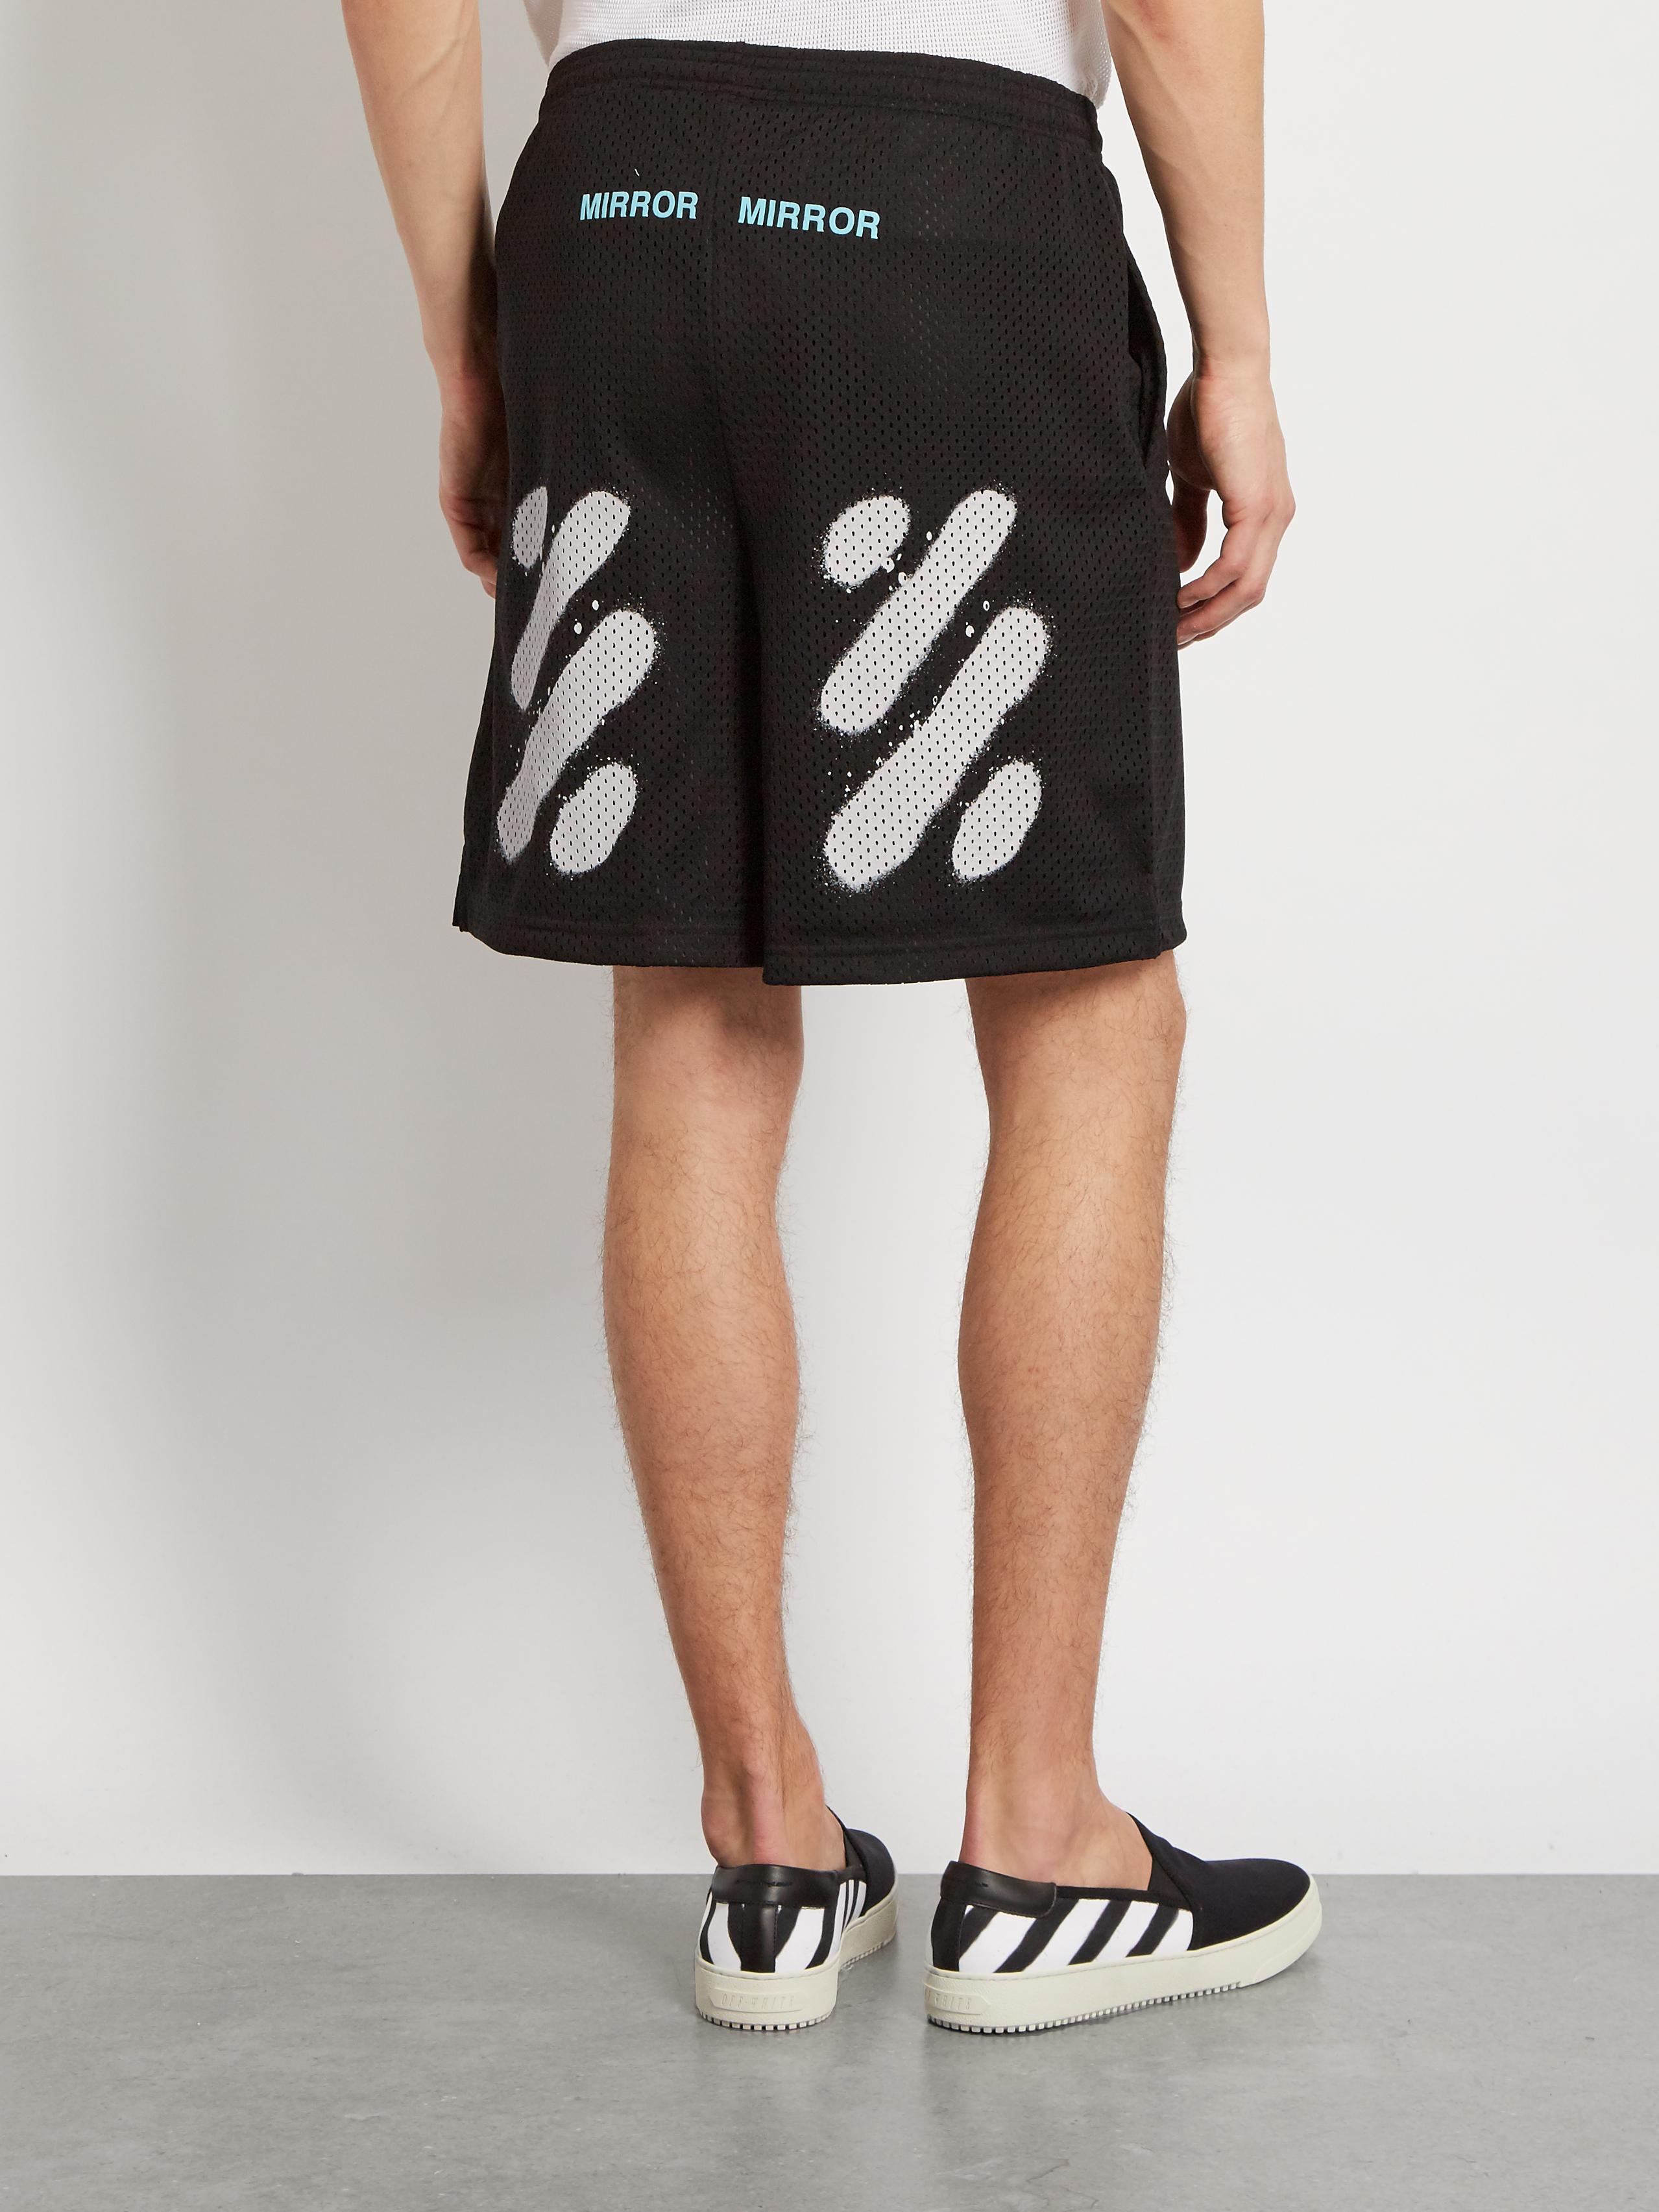 Off-White c/o Virgil Abloh Spray-paint Mesh Shorts in Black for Men | Lyst